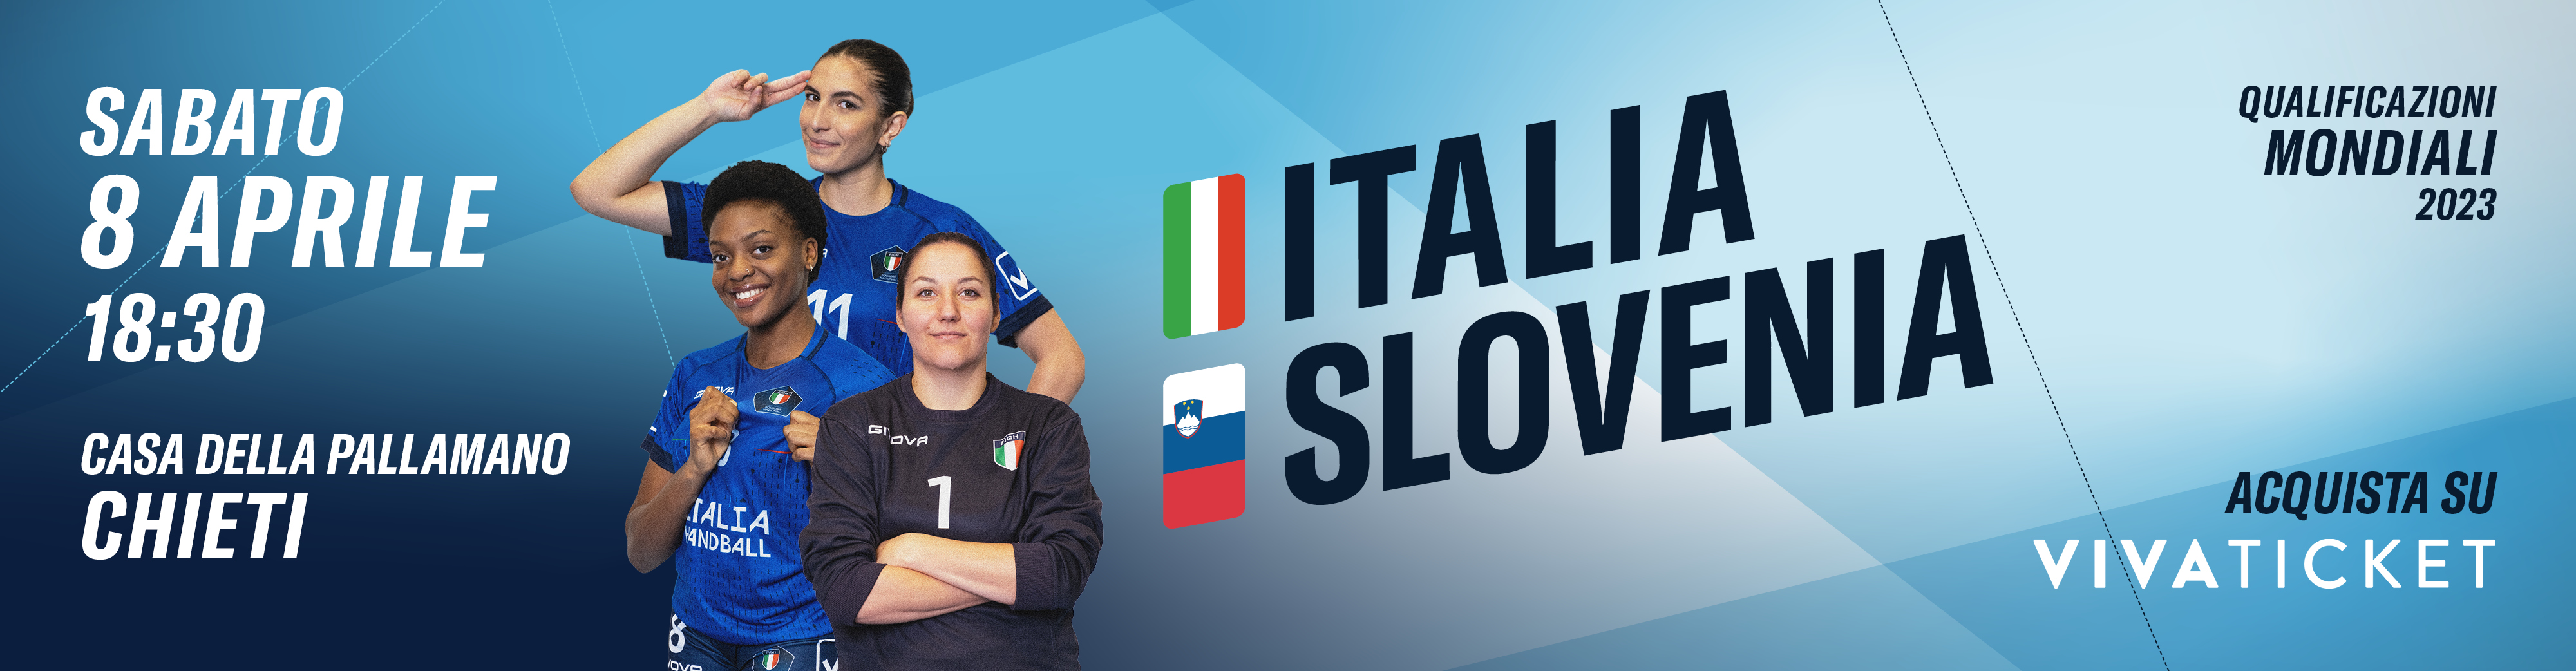 FIGH Italia slovenia social CORRETTO4